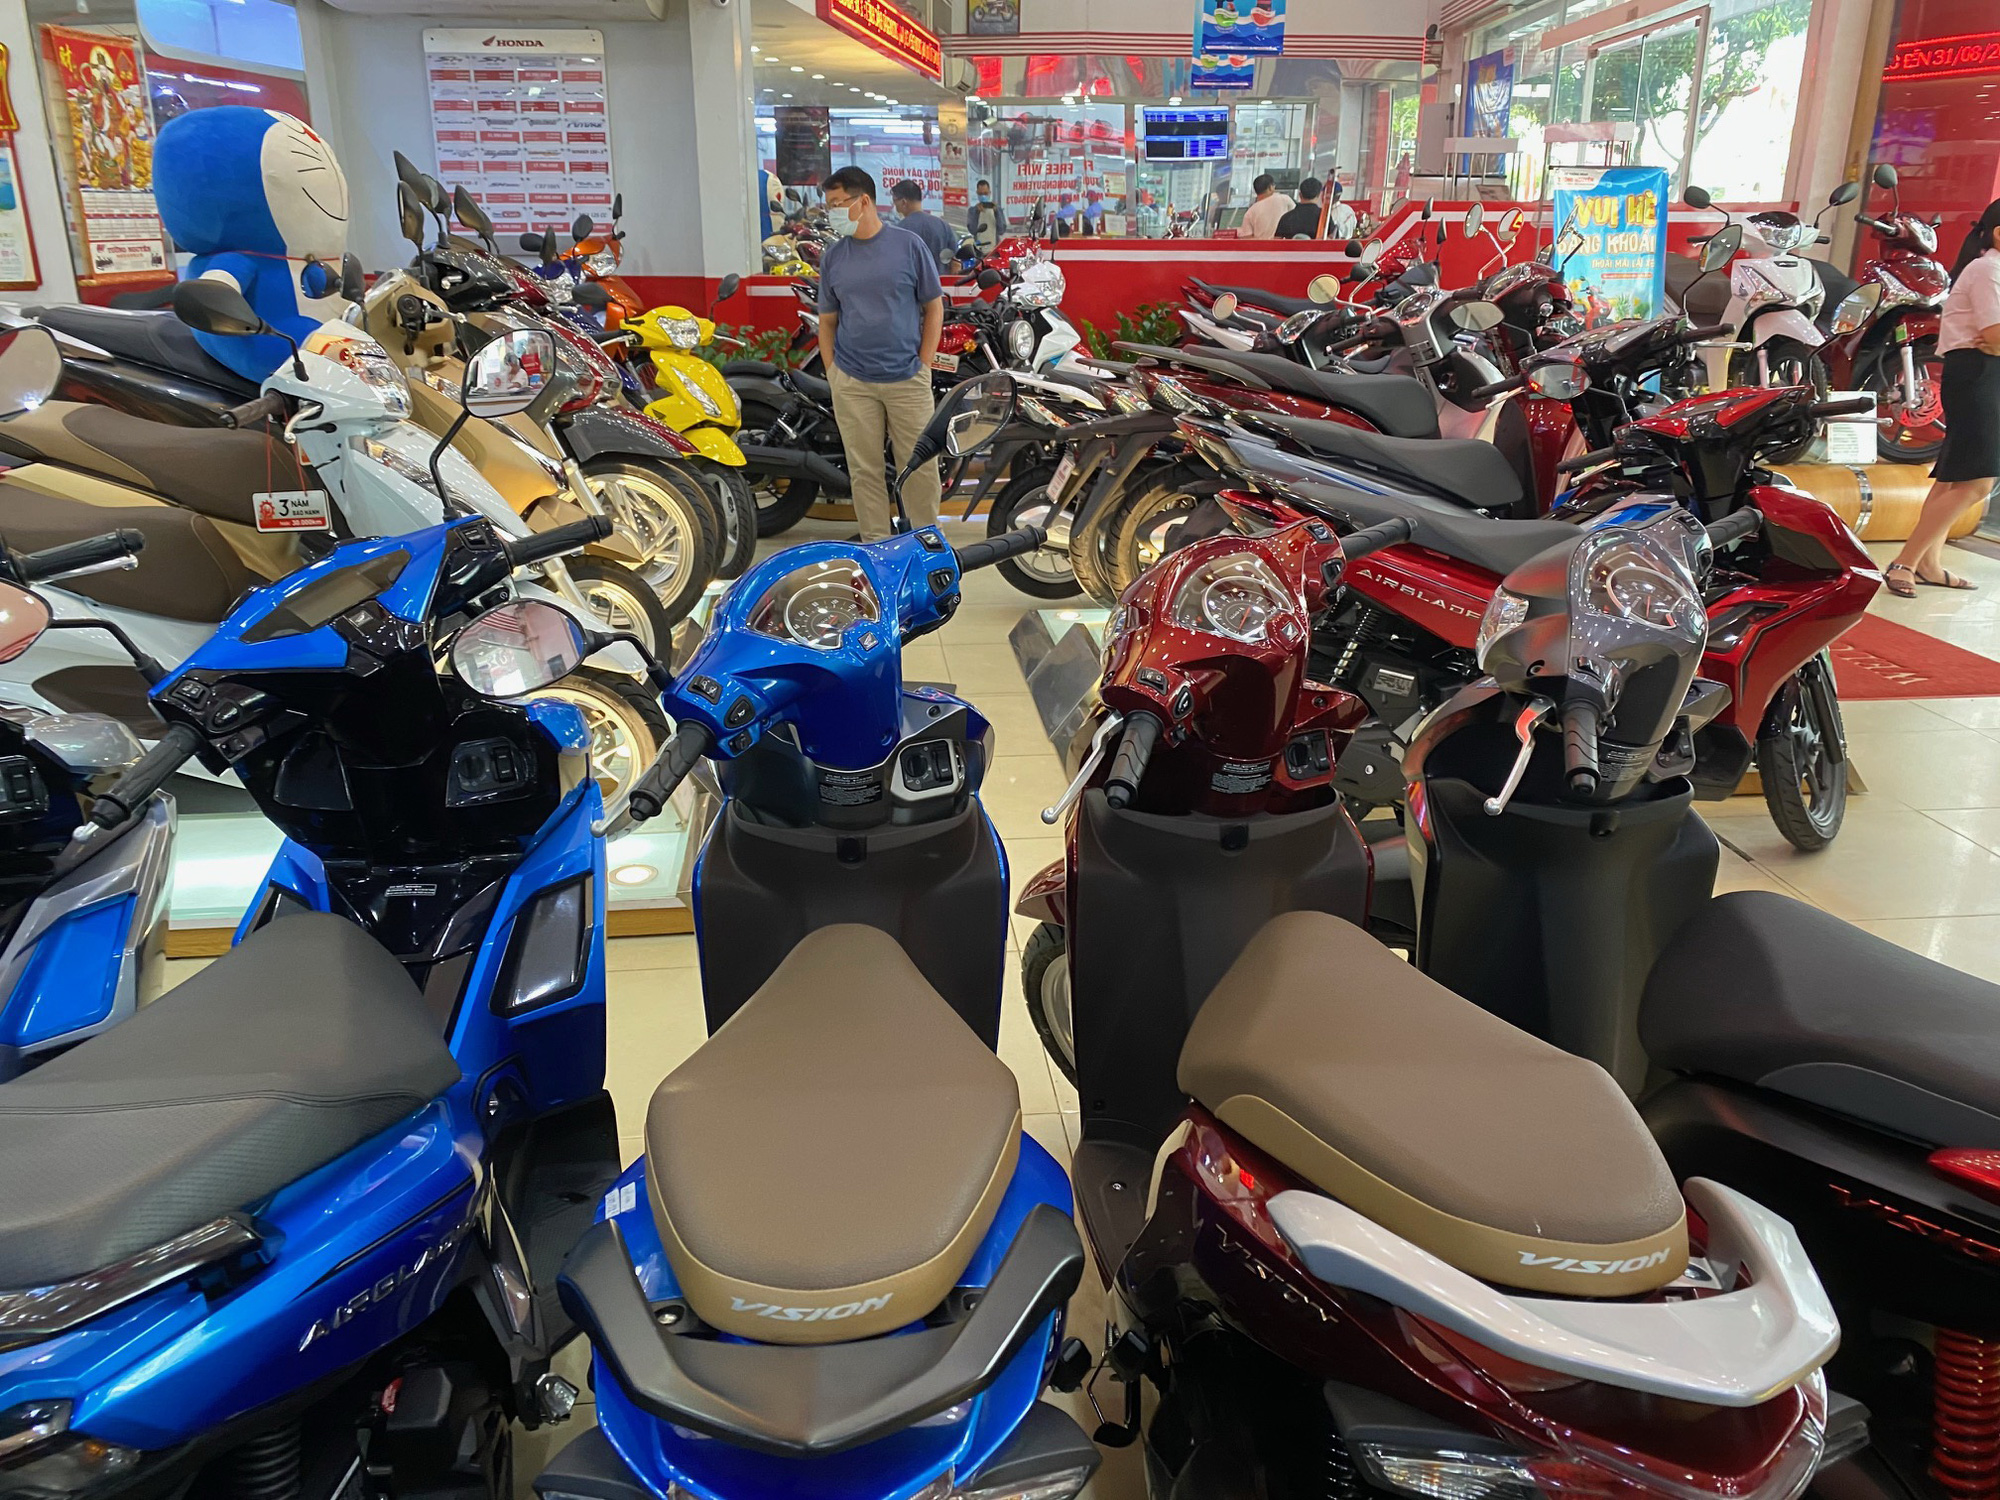 Hãng xe Honda Việt Nam giới thiệu Super Dream 110cc mới giá từ 187 triệu  đồng  Xe Máy  Giá Xe Máy  Mua Bán Xe Máy  Xe Moto  Tư Vấn Mua Xe Máy